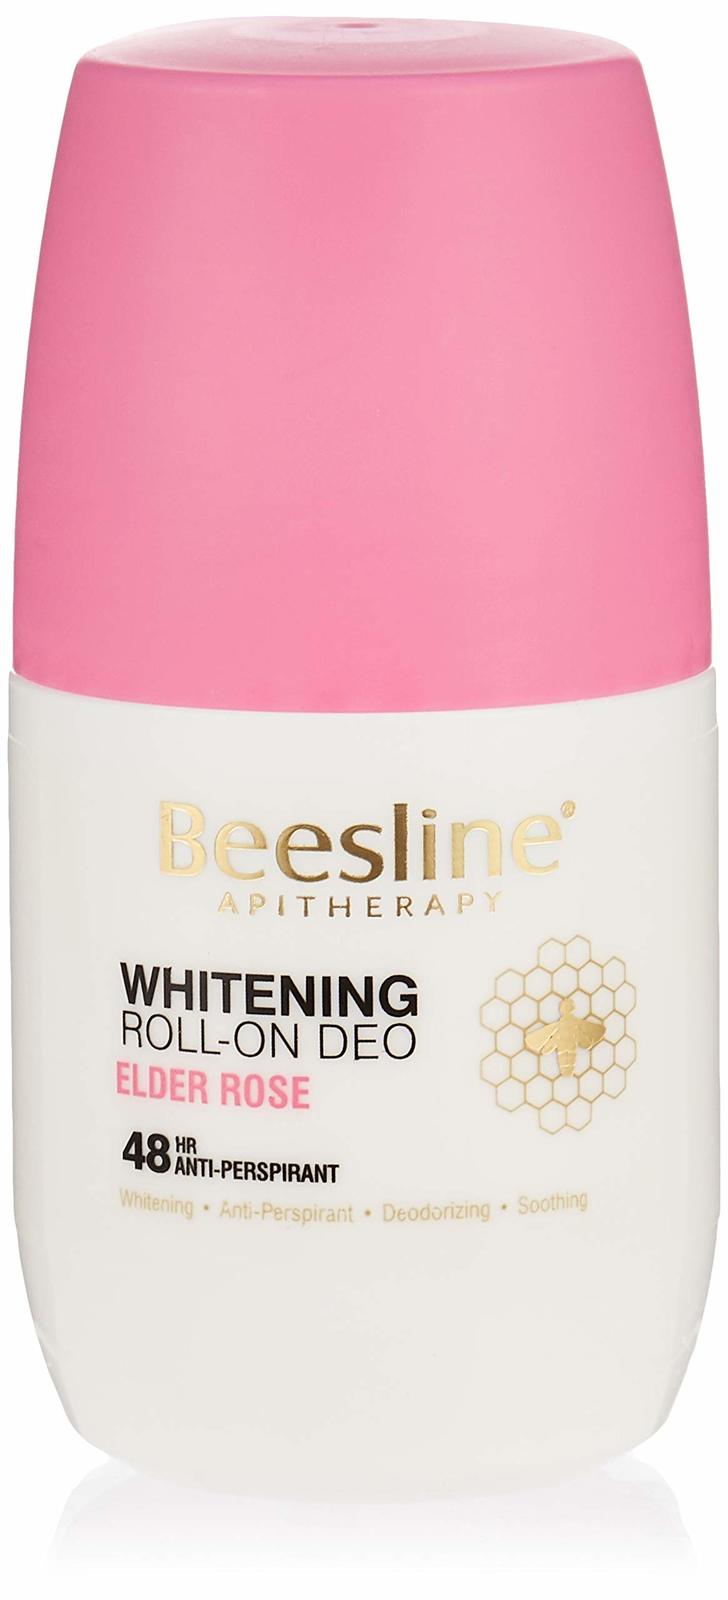 Beesline Whitening Roll-On Deodorant , Elder Rose